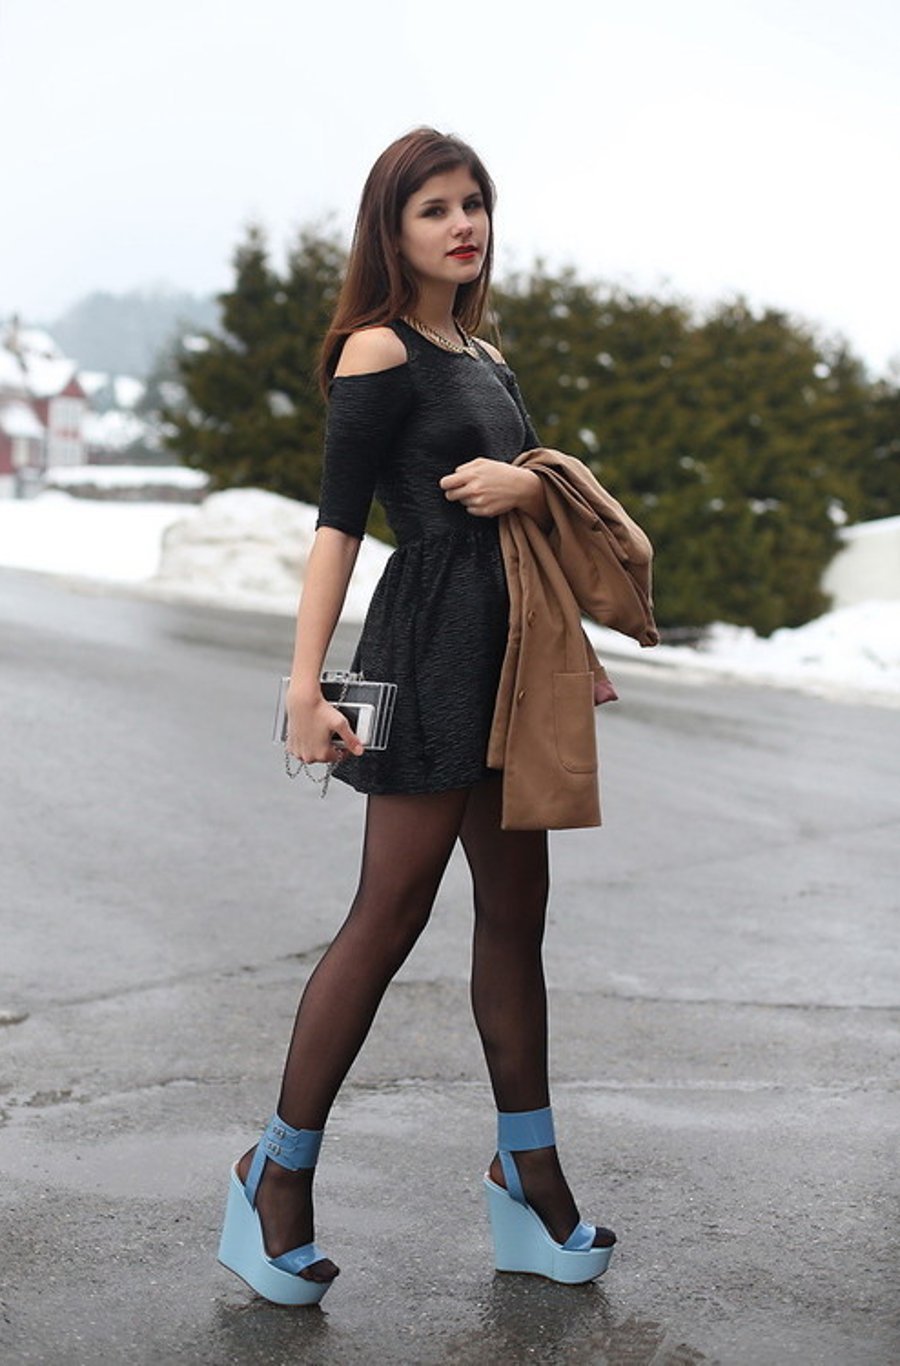 Girl in teen stocking